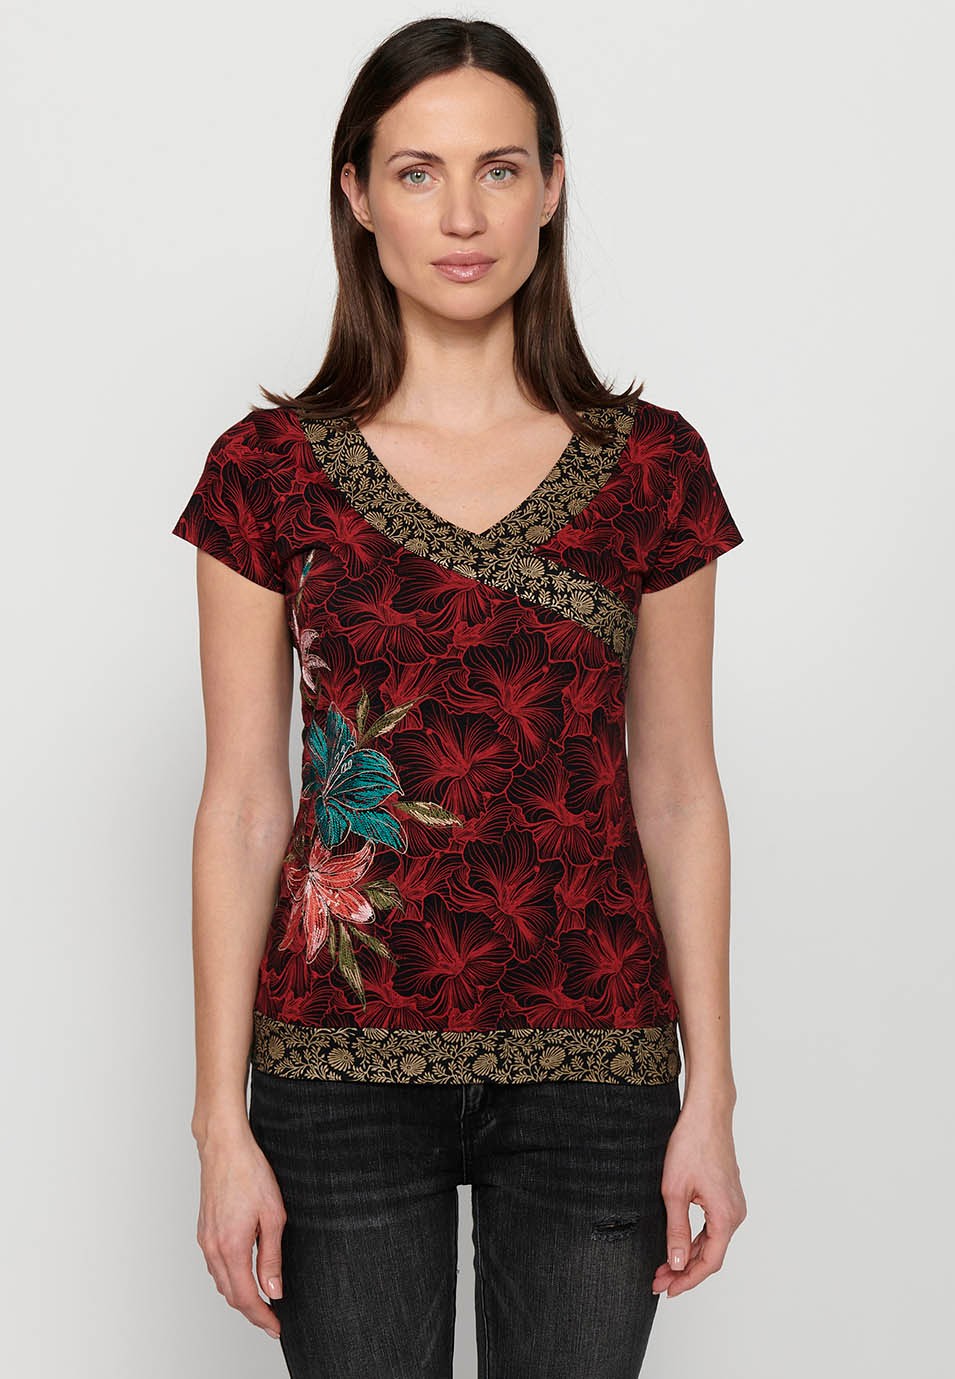 Camiseta de manga corta, cuello en pico y detalles bordados florales multicolor para mujer